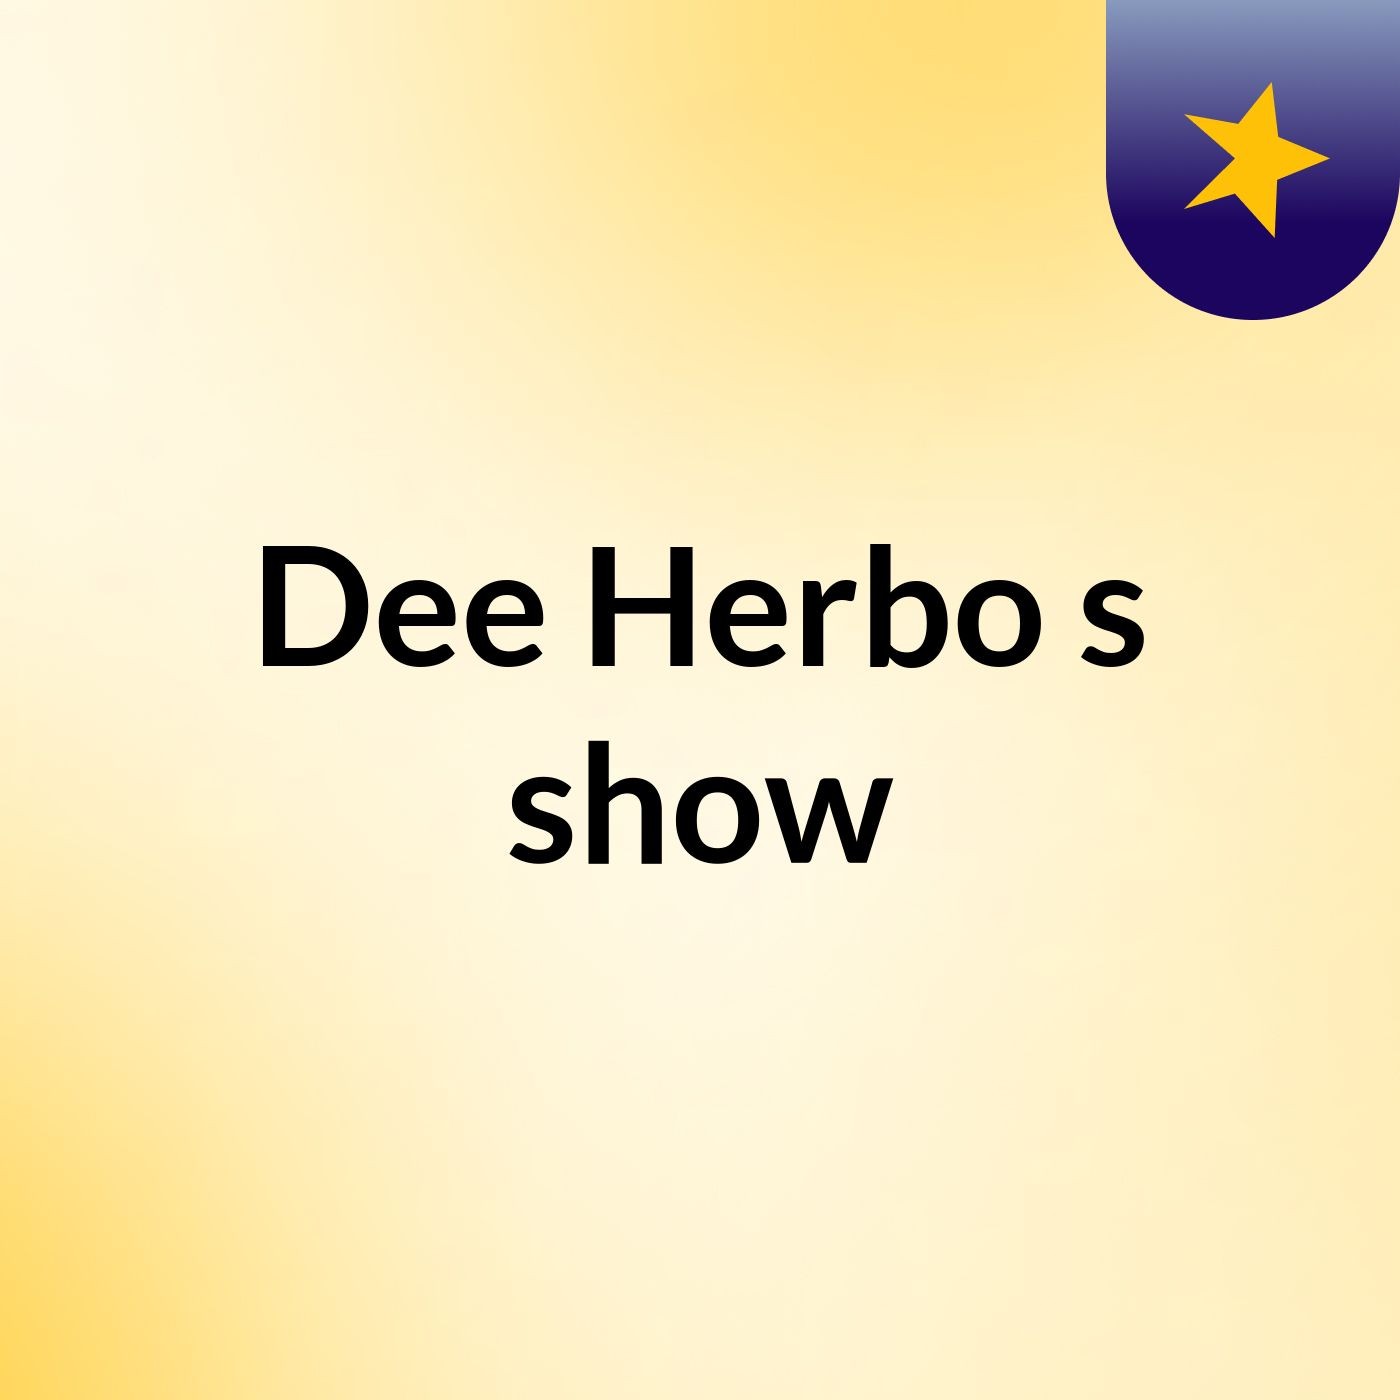 Dee Herbo's show